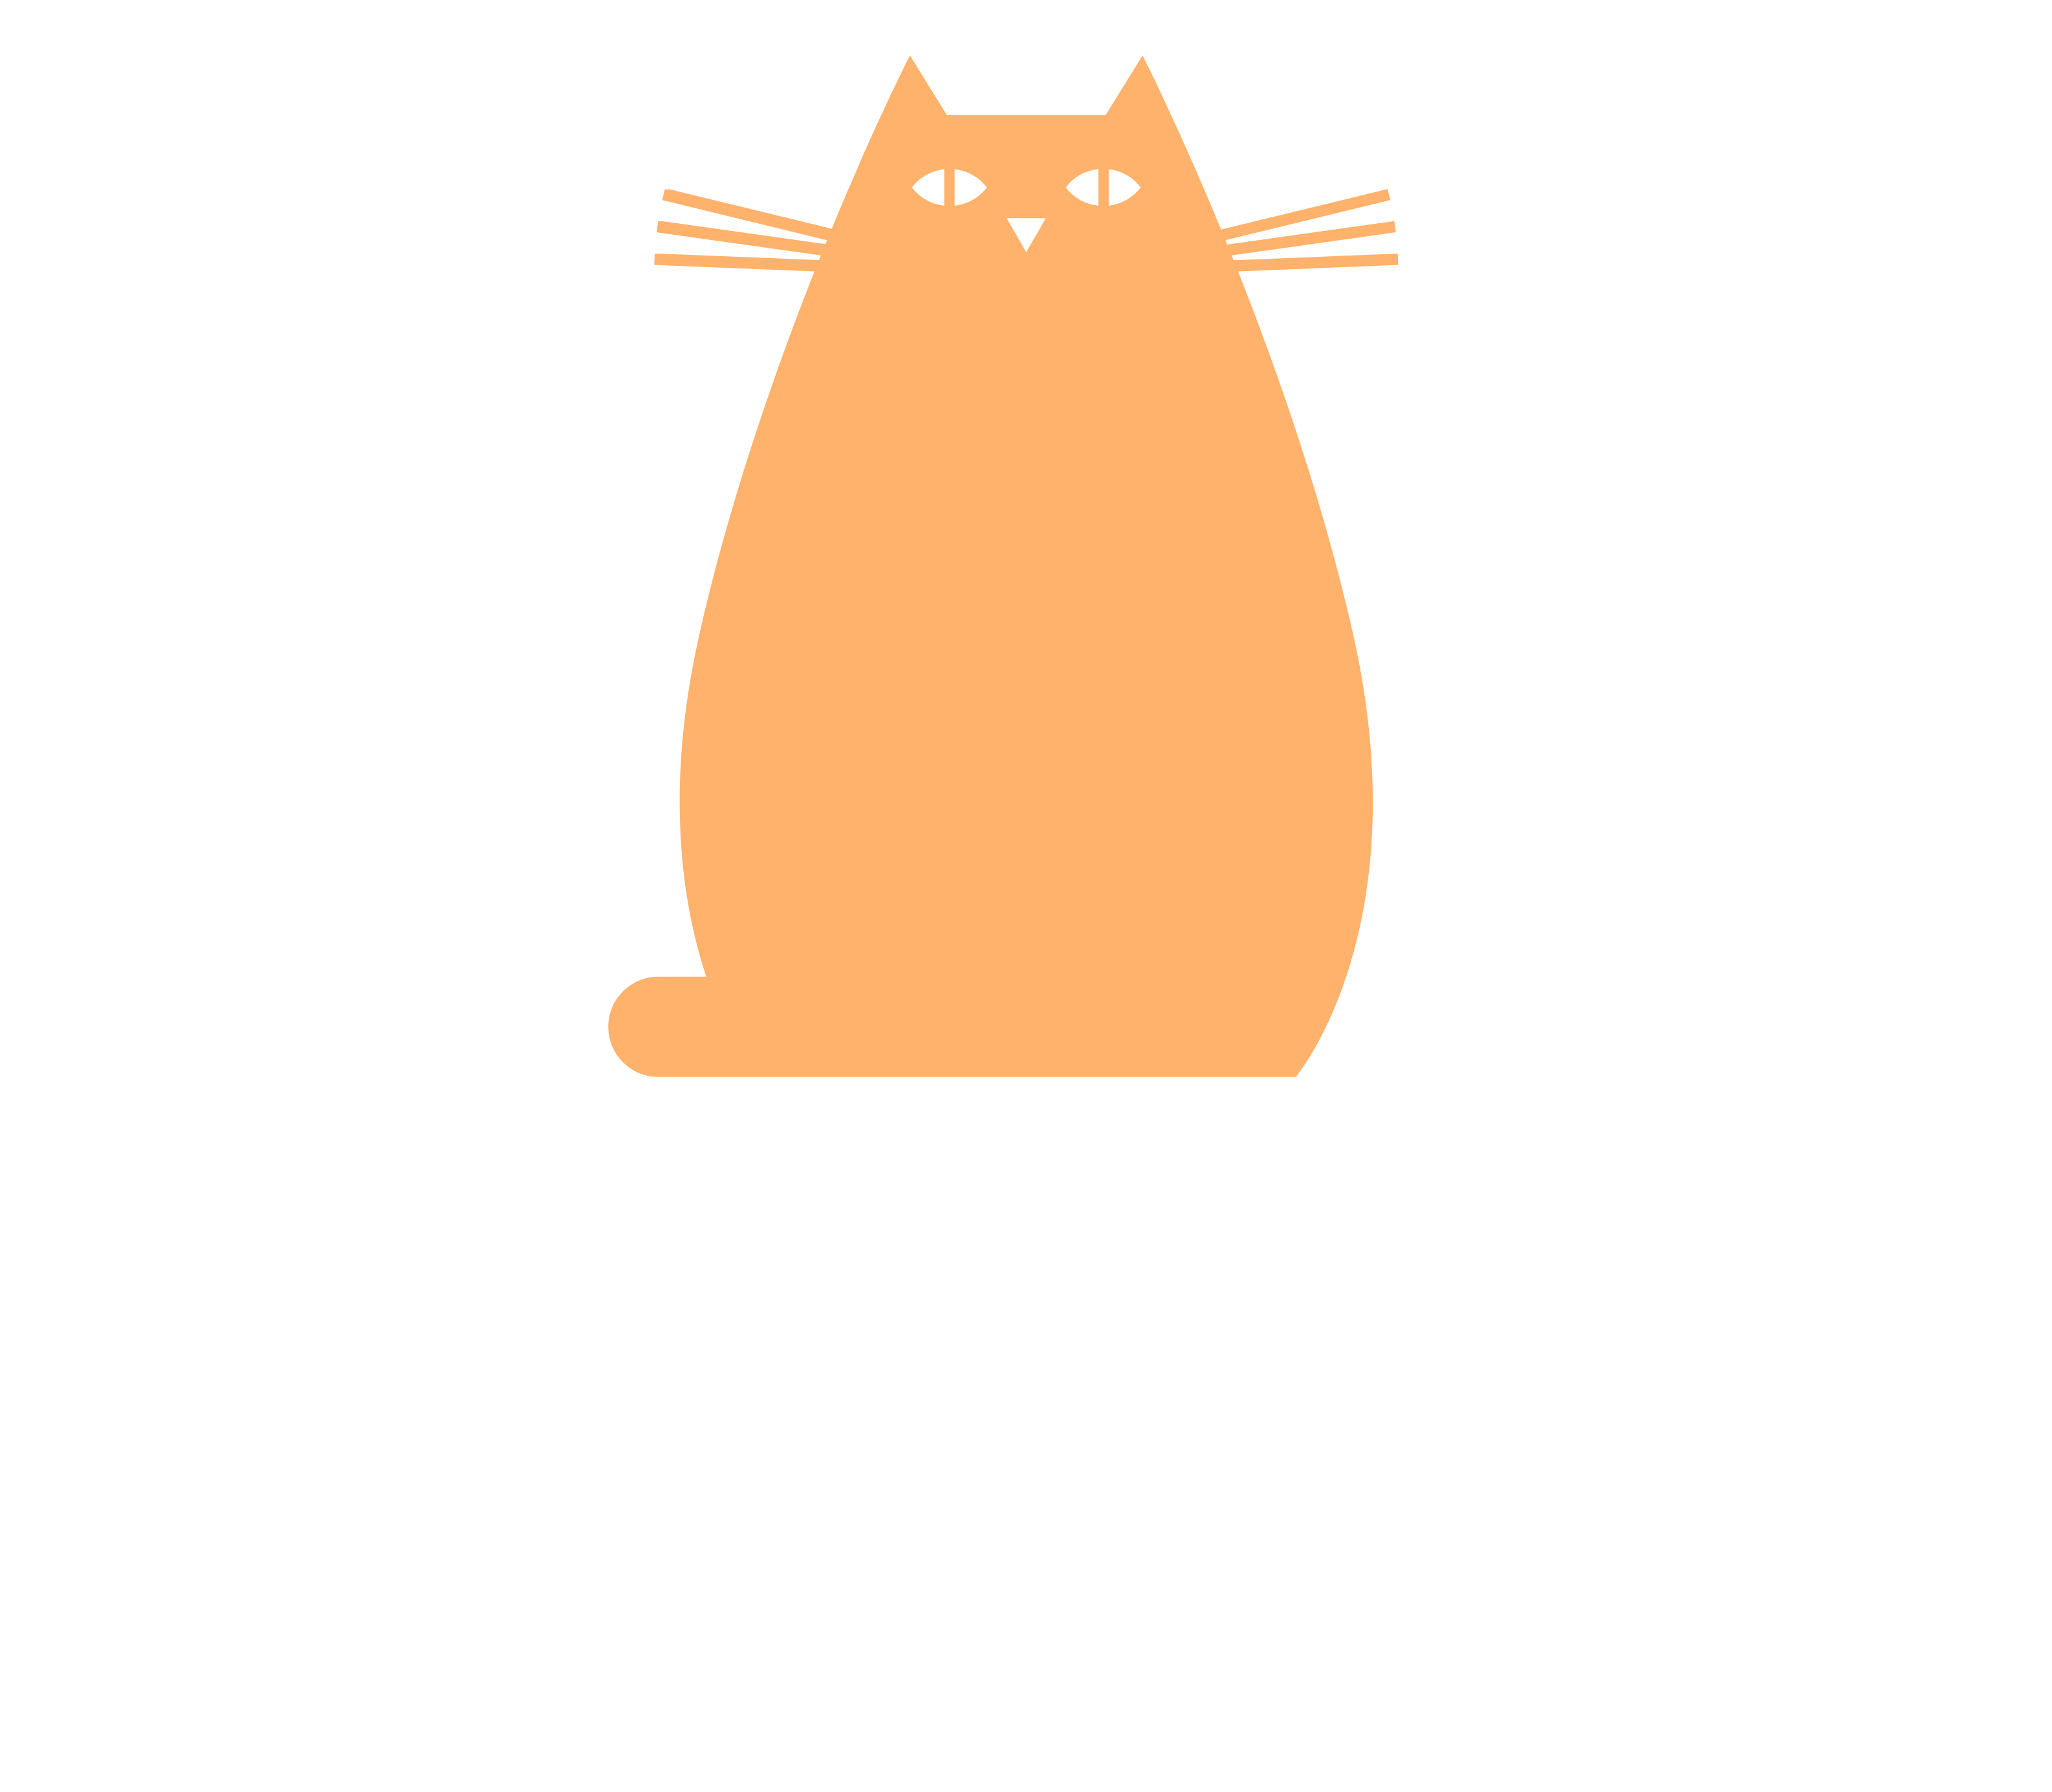 Everything & Nothing